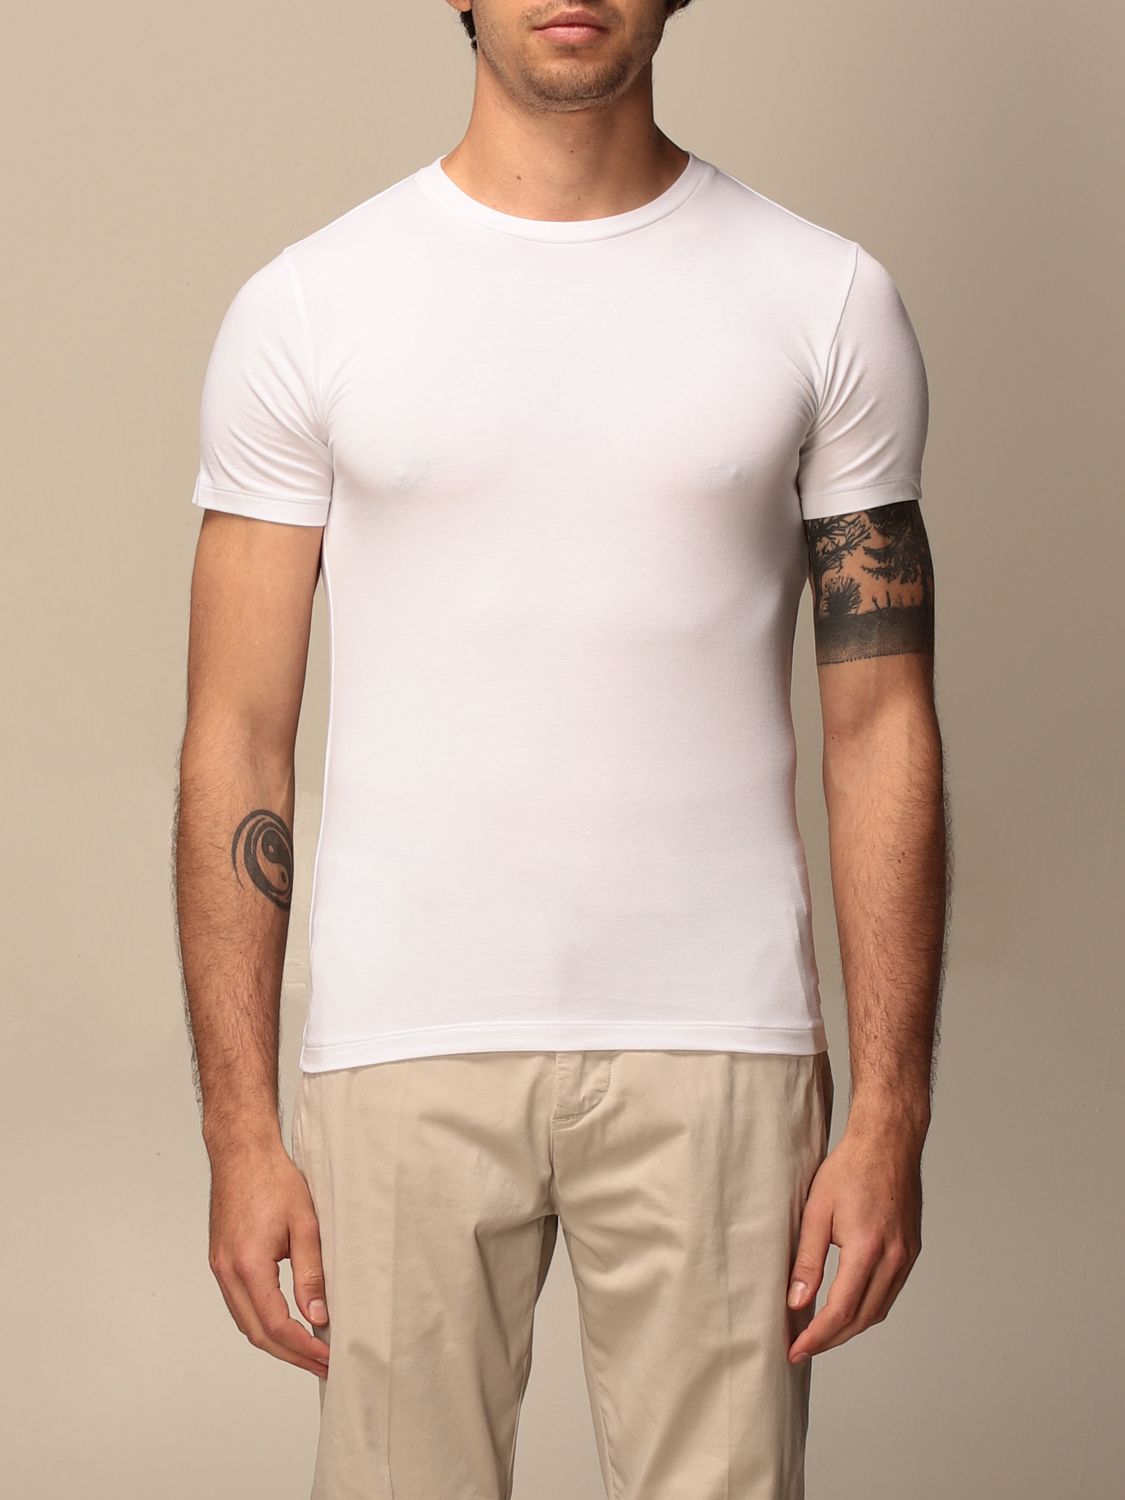 T-shirt Polo Ralph Lauren: T-shirt homme Polo Ralph Lauren blanc 1